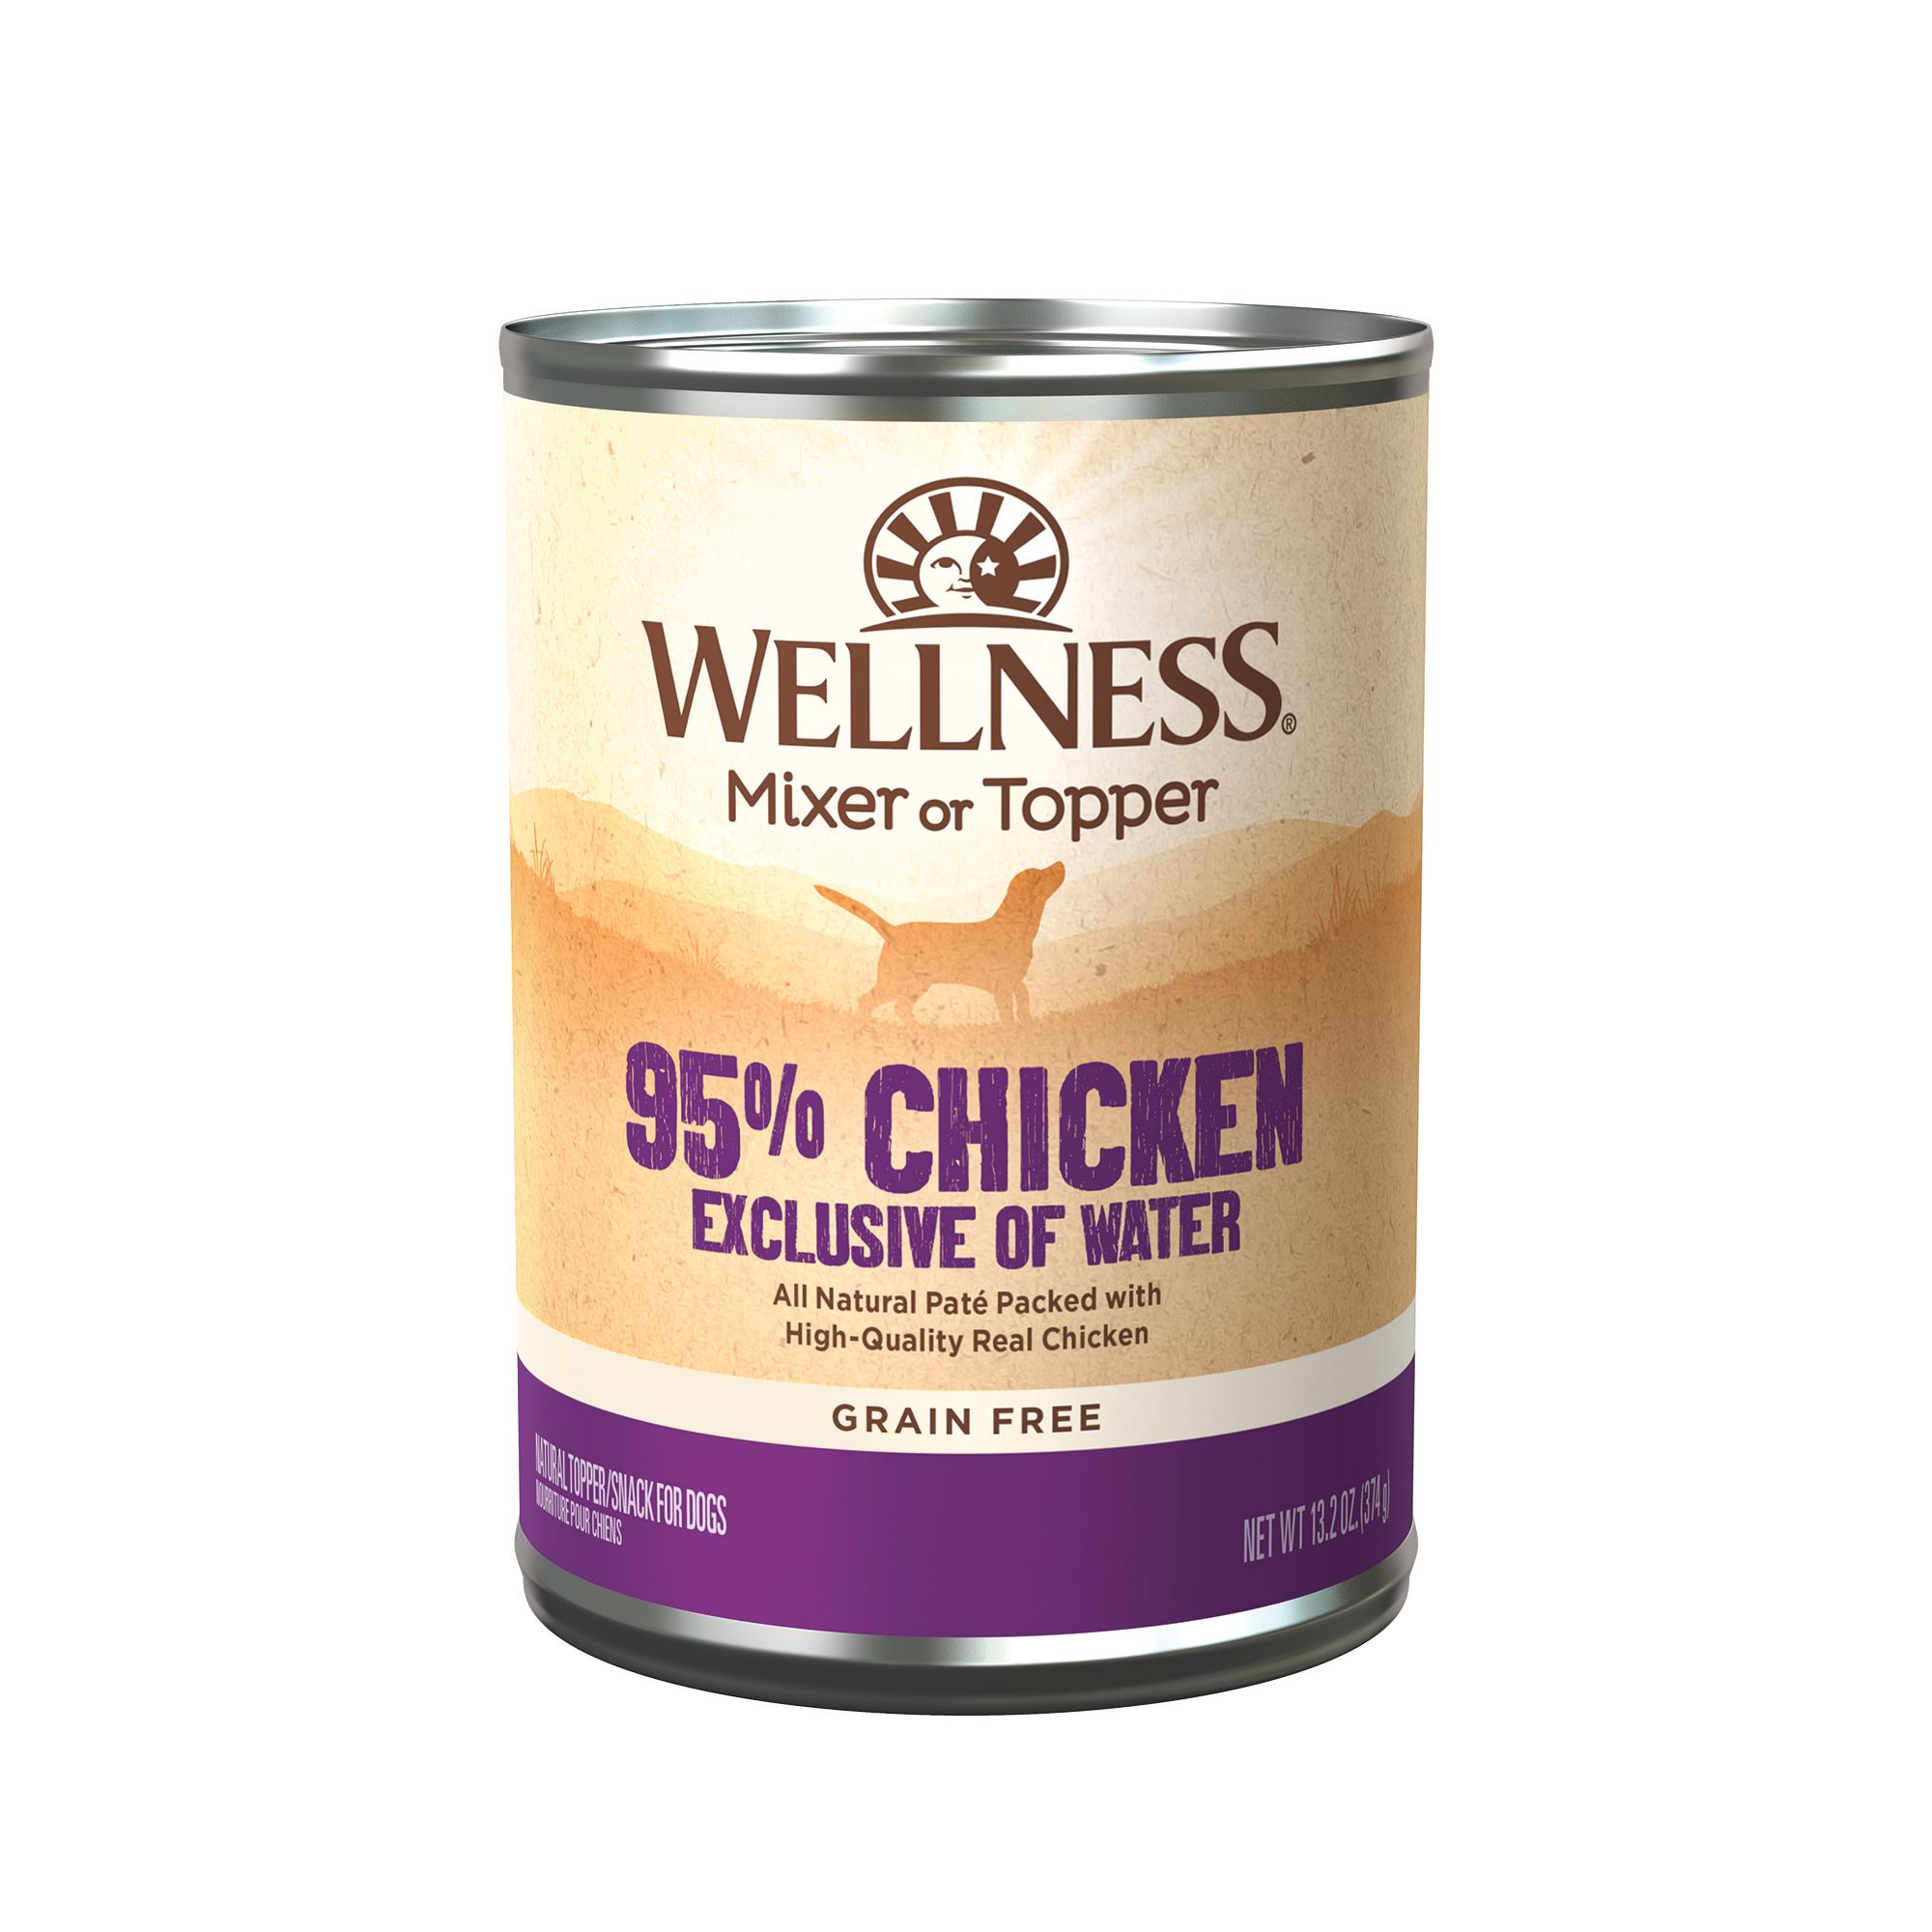 wellness simple dog food petsmart